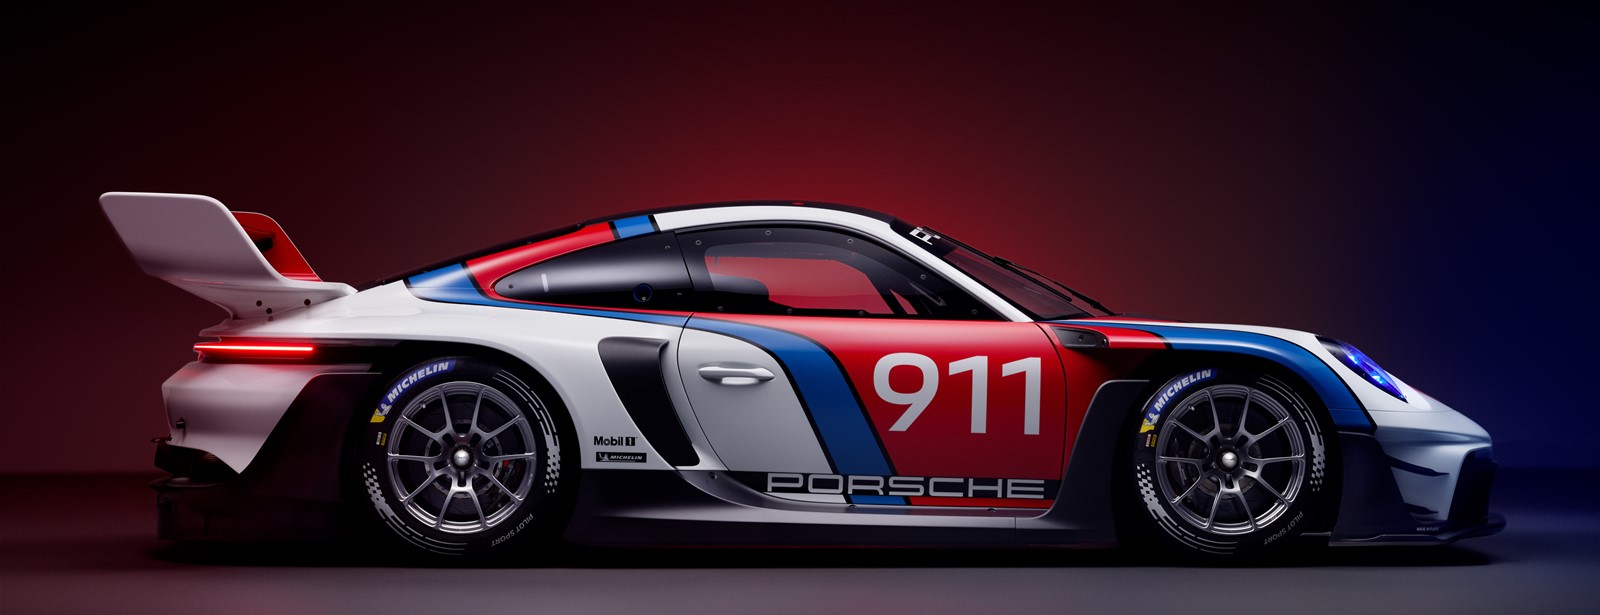 Spectaculair ontwerp en baanbrekende prestaties: de nieuwe 911 GT3 R rennsport.